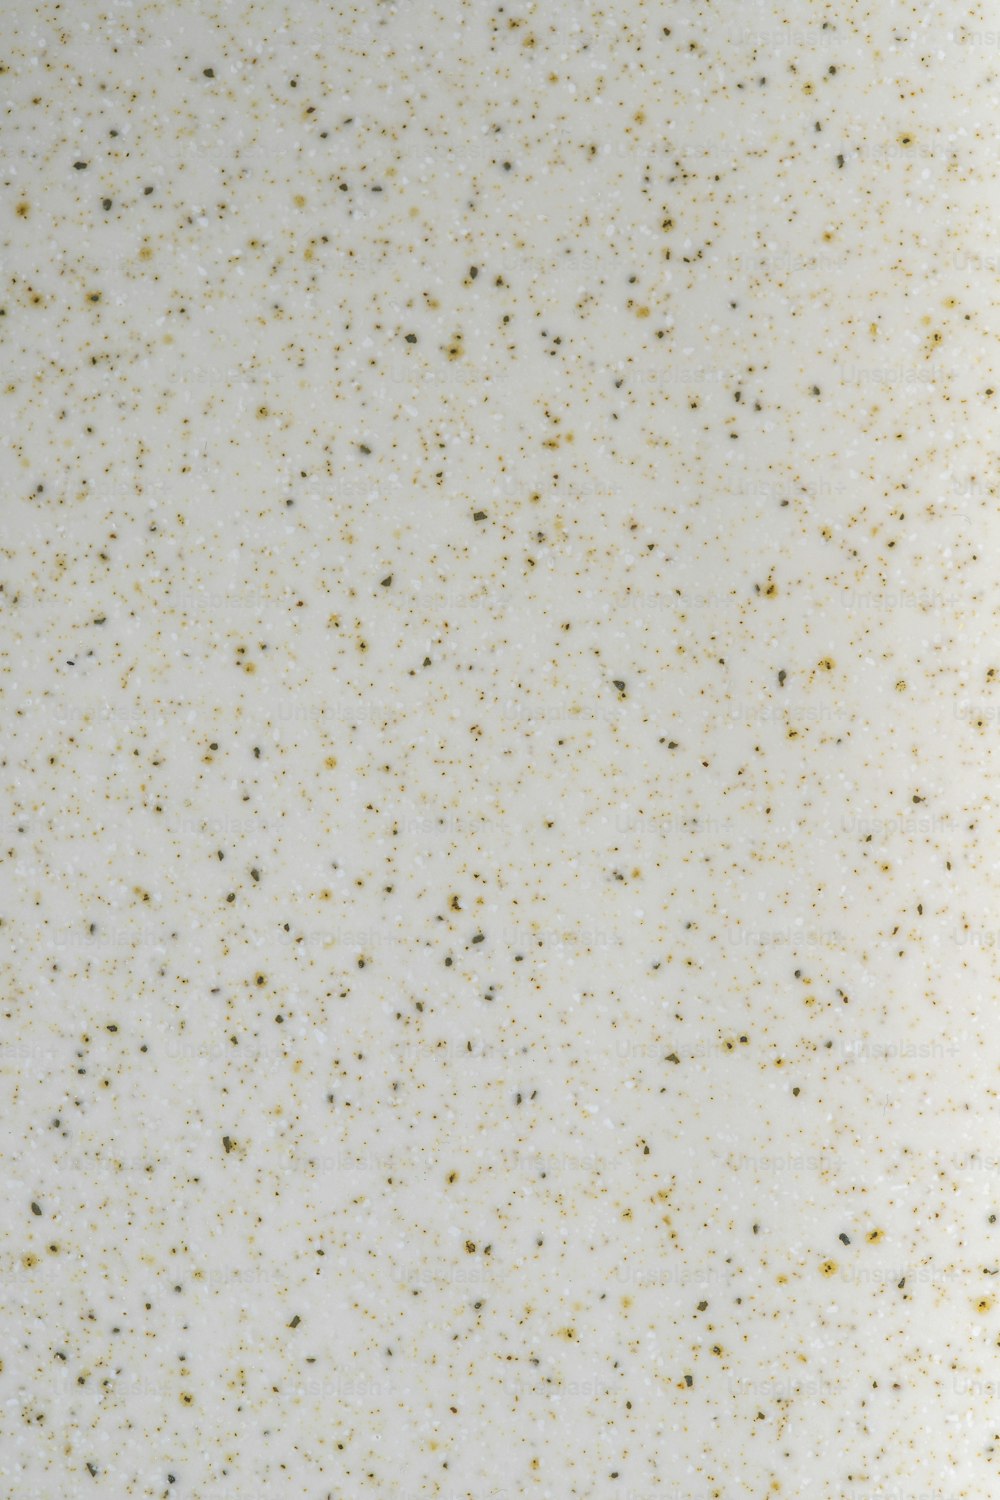 un primo piano di una superficie bianca con macchioline dorate